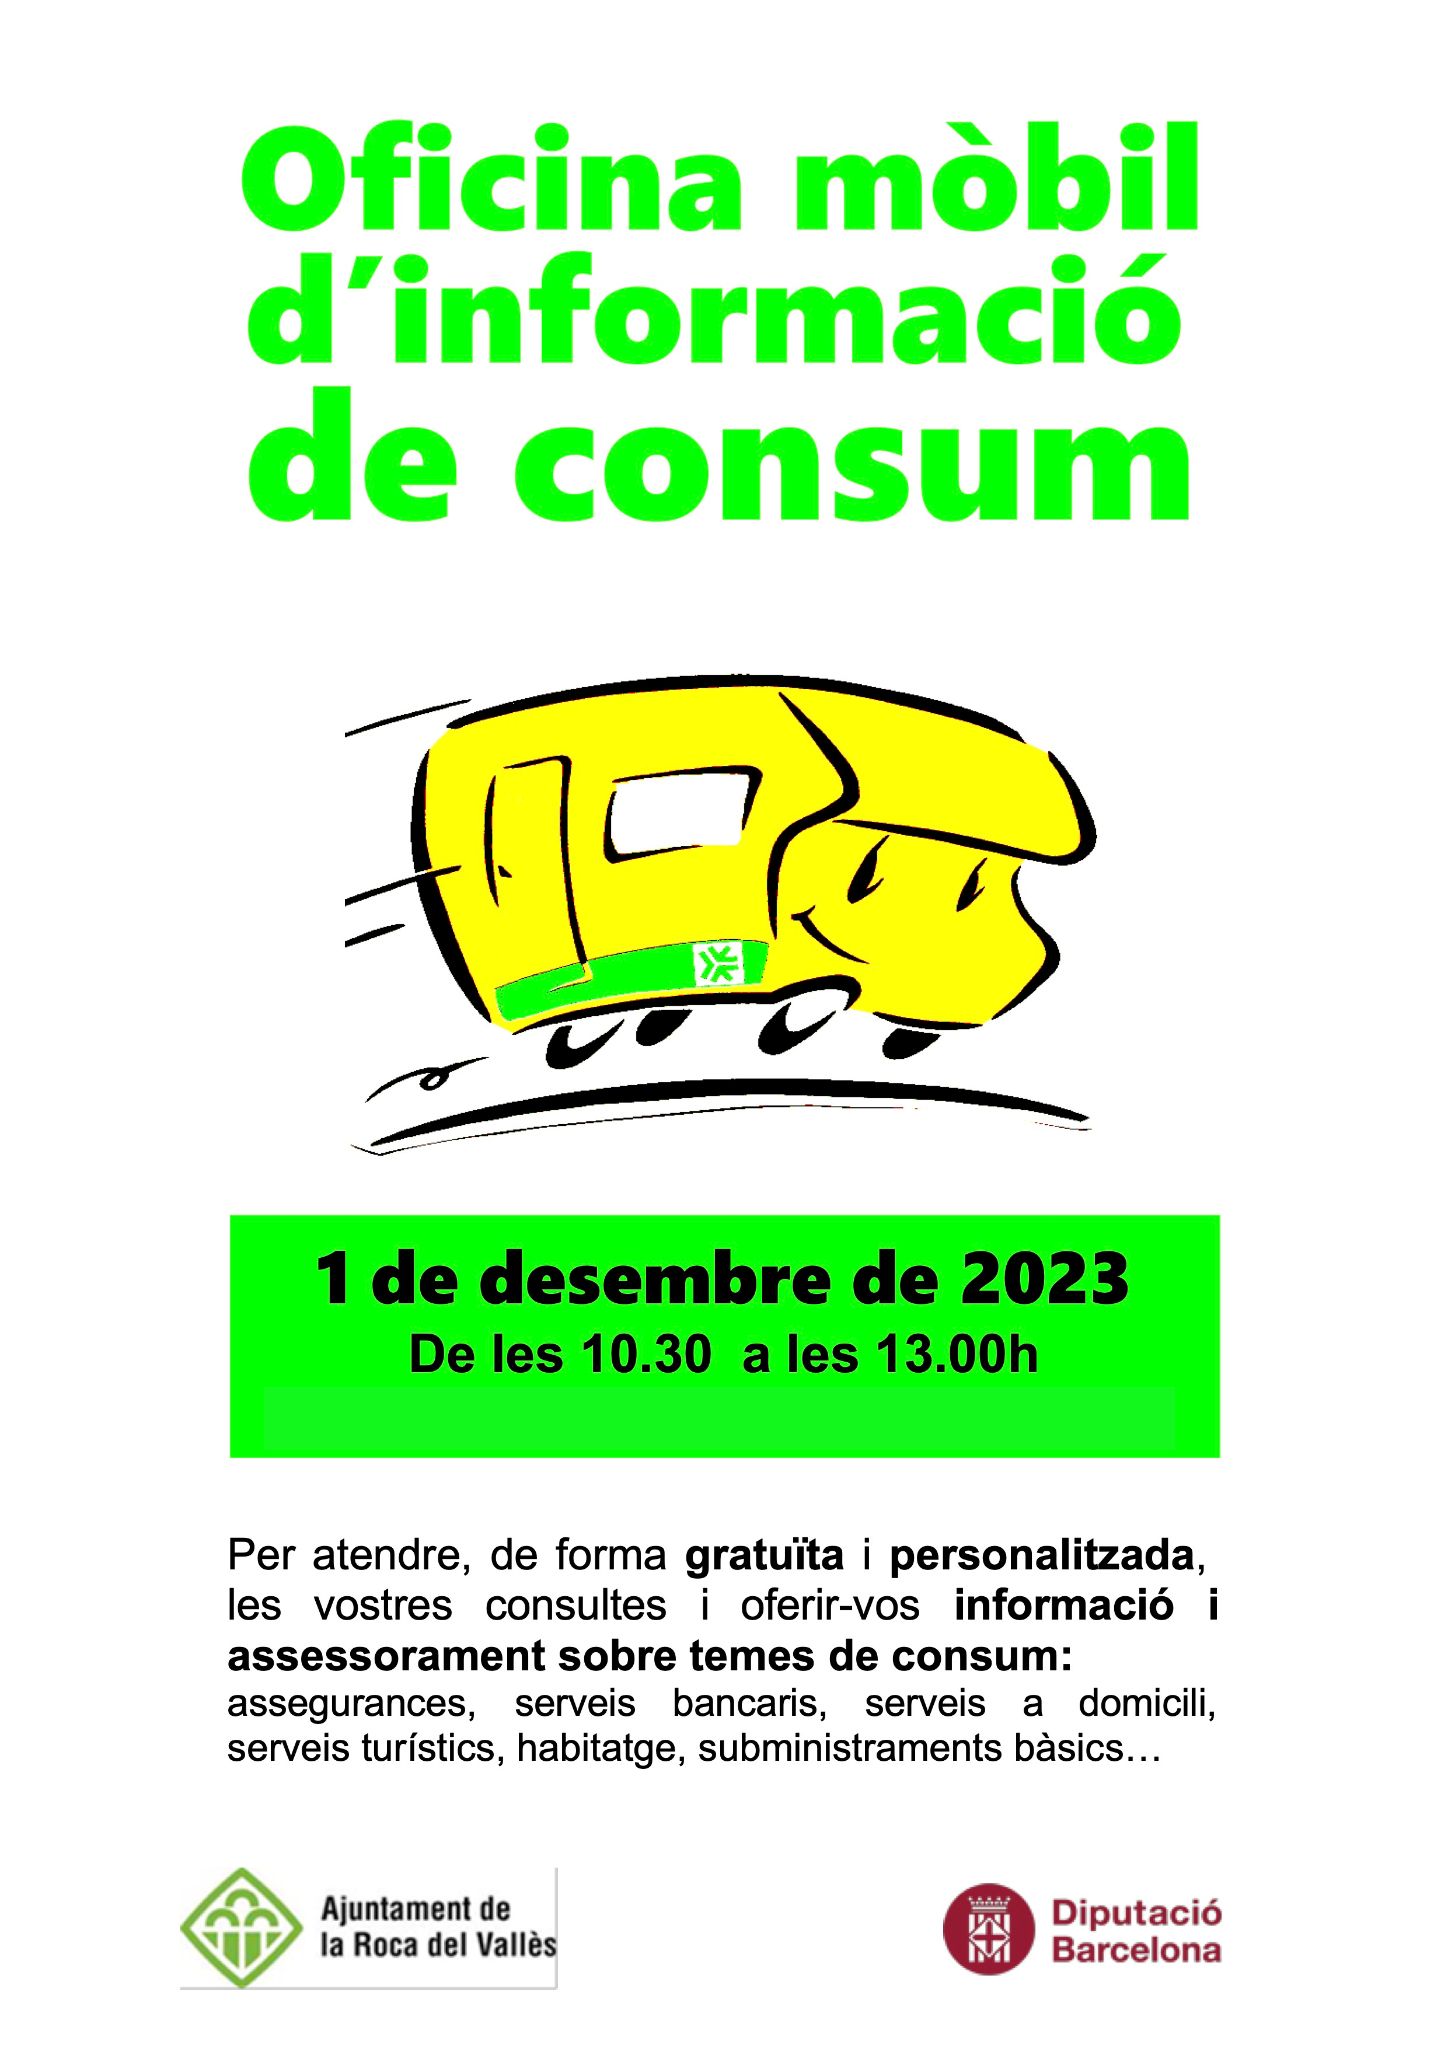 L'Oficina Mòbil d'Informació de Consum atendrà al desembre les consultes a l'Ajuntament